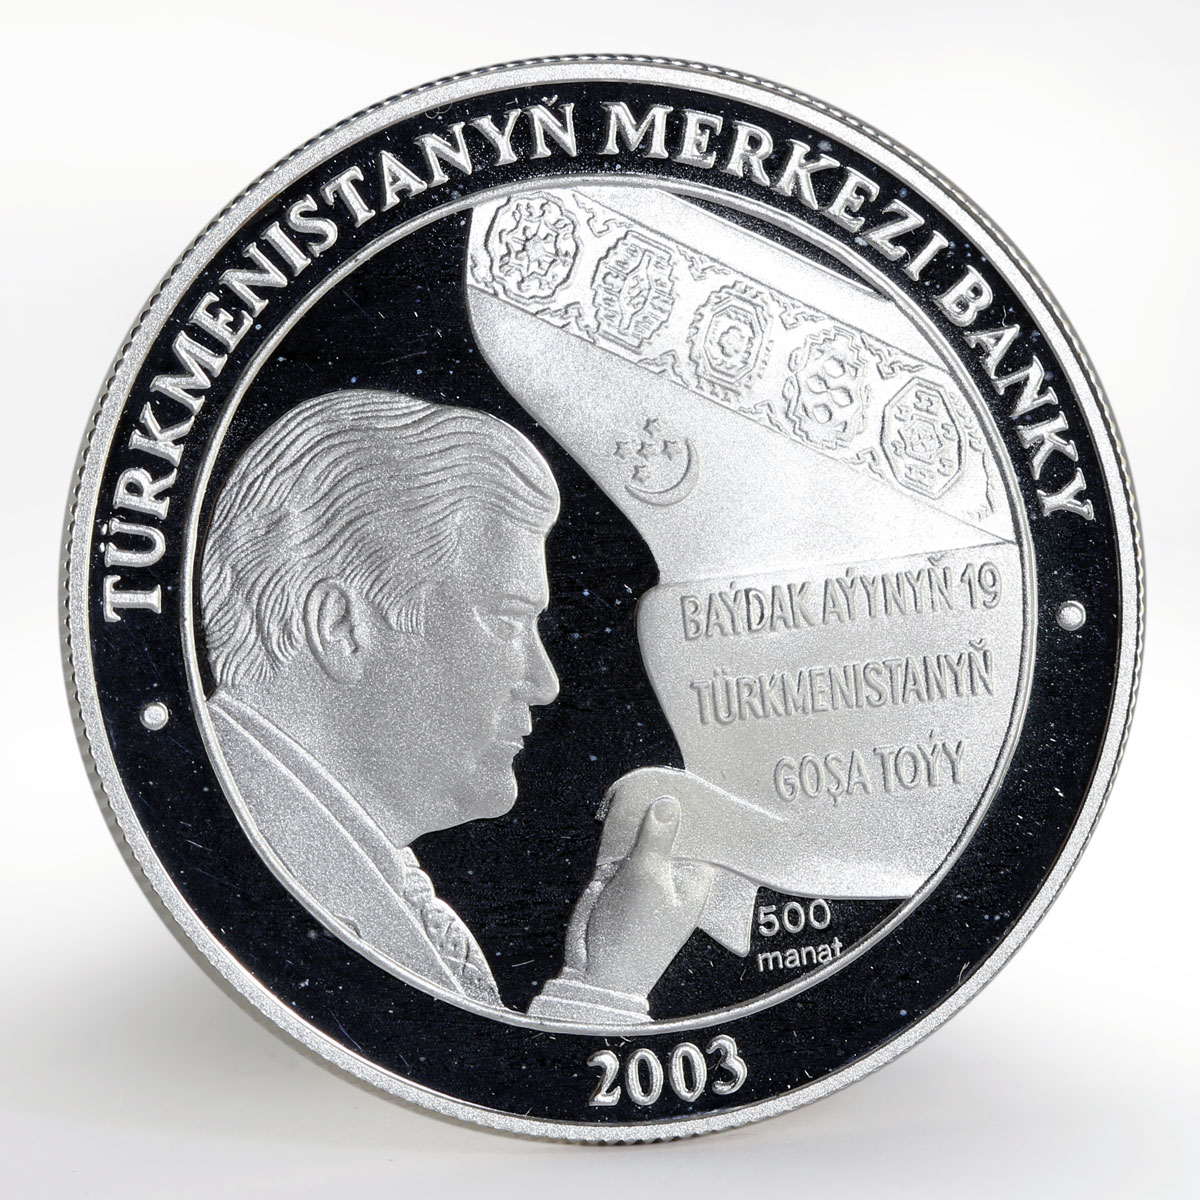 Turkmenistan 500 manat Ruhnama Niyazov 63rd Birthday Flag silver proof coin 2003